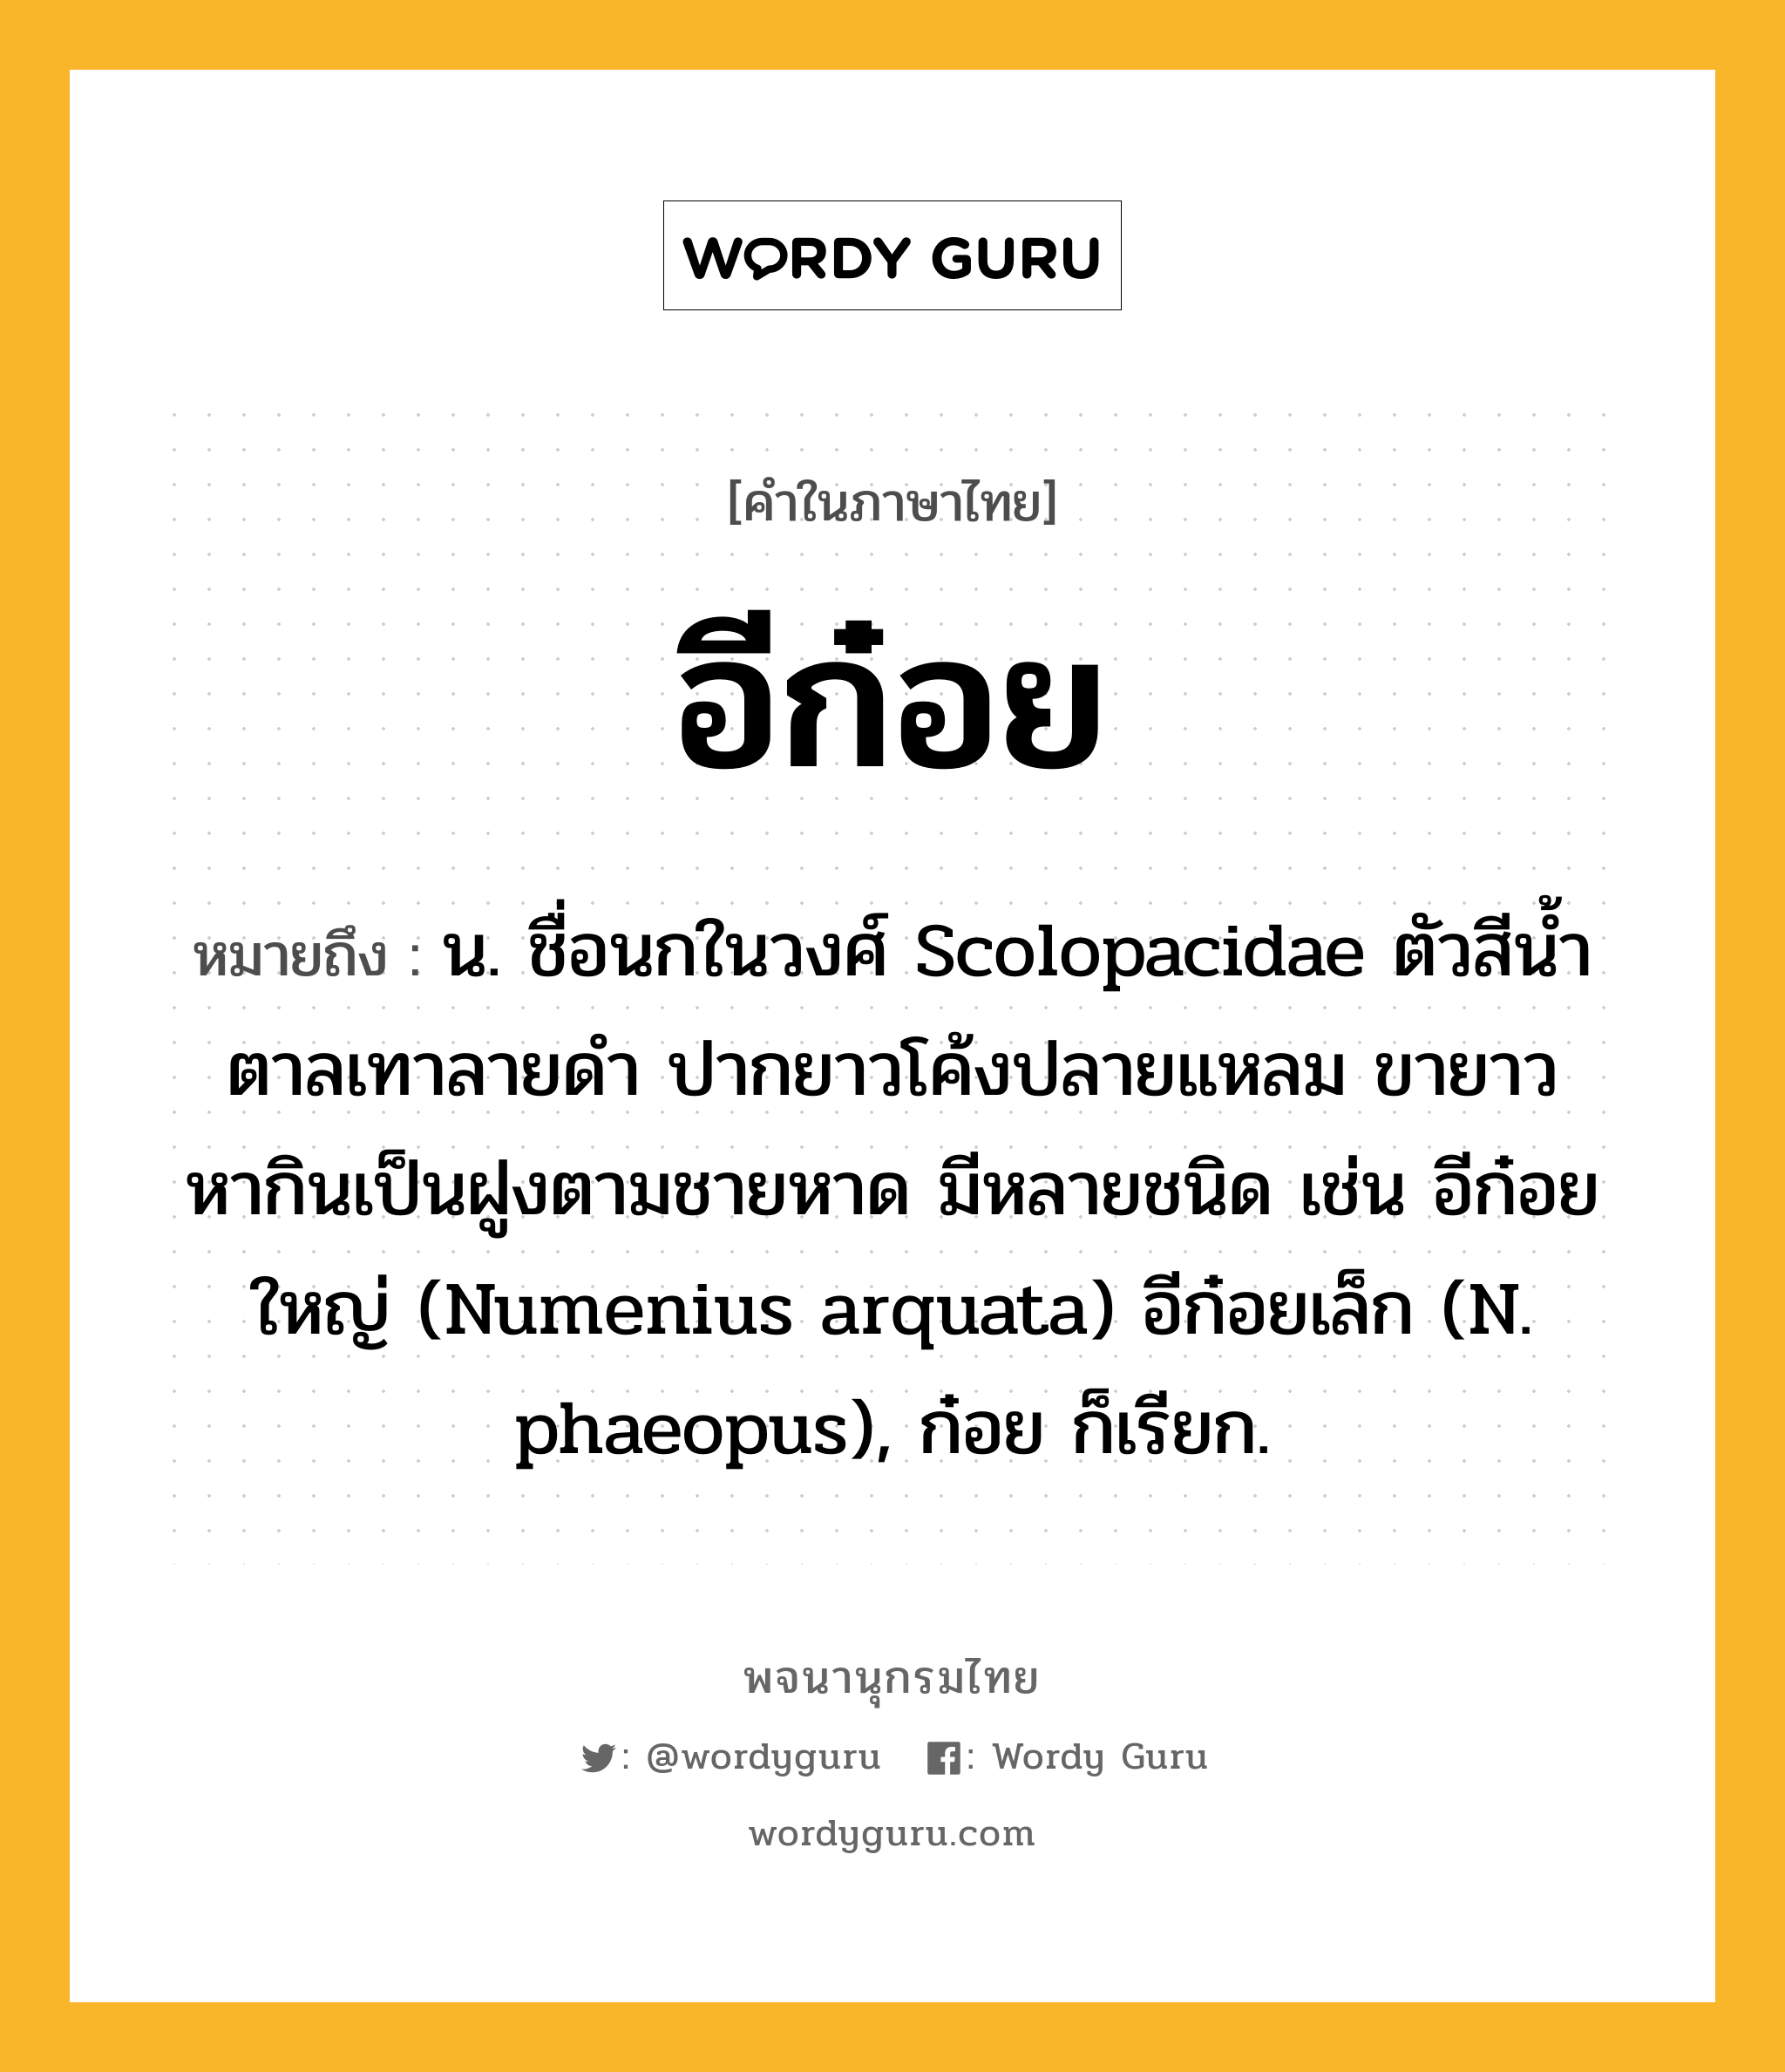 อีก๋อย หมายถึงอะไร?, คำในภาษาไทย อีก๋อย หมายถึง น. ชื่อนกในวงศ์ Scolopacidae ตัวสีนํ้าตาลเทาลายดํา ปากยาวโค้งปลายแหลม ขายาว หากินเป็นฝูงตามชายหาด มีหลายชนิด เช่น อีก๋อยใหญ่ (Numenius arquata) อีก๋อยเล็ก (N. phaeopus), ก๋อย ก็เรียก.